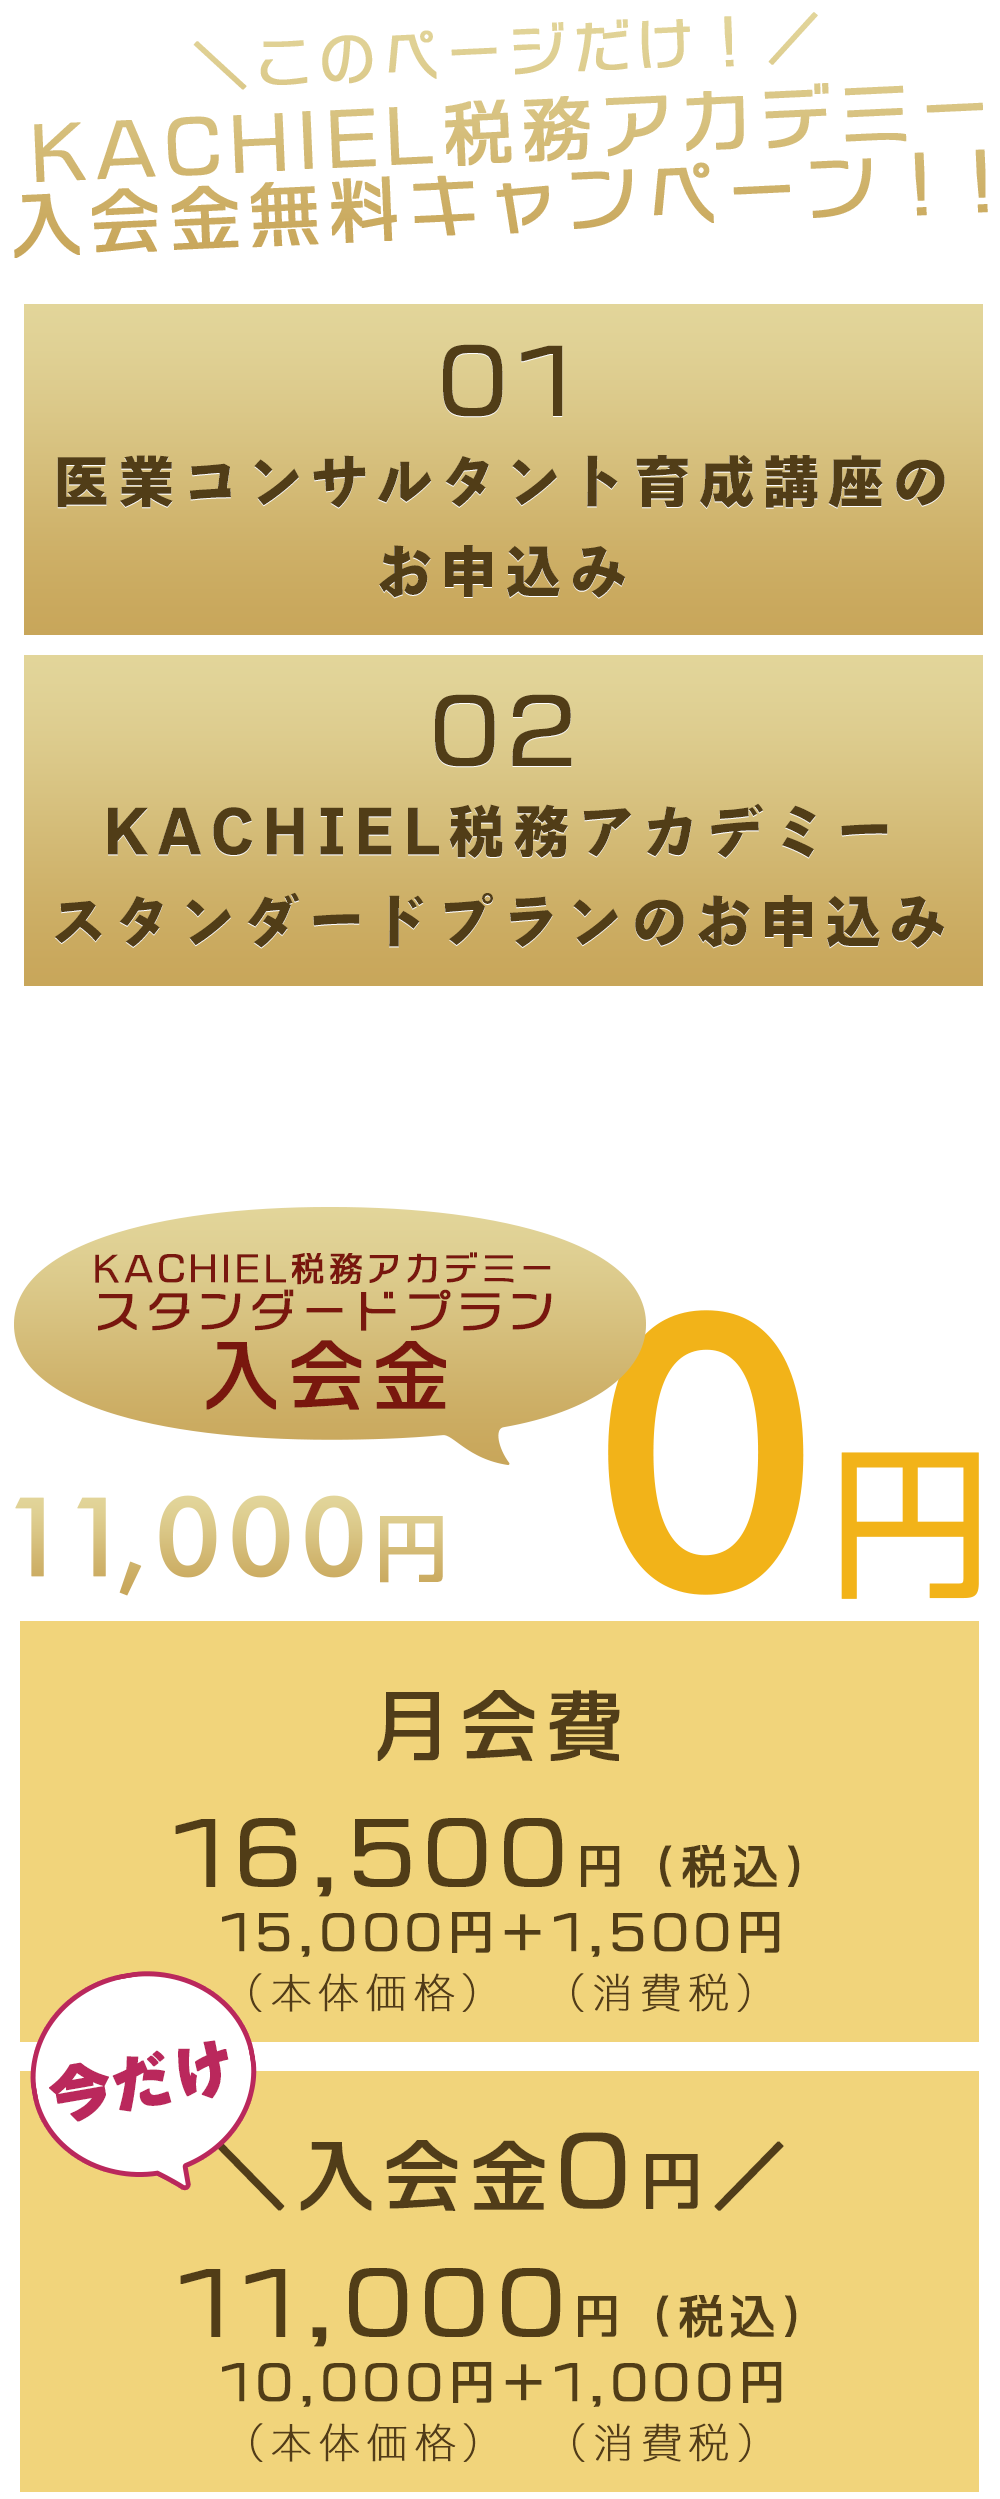 ＼このページだけ！／KACHIEL税務アカデミー入会金無料キャンペーン！！